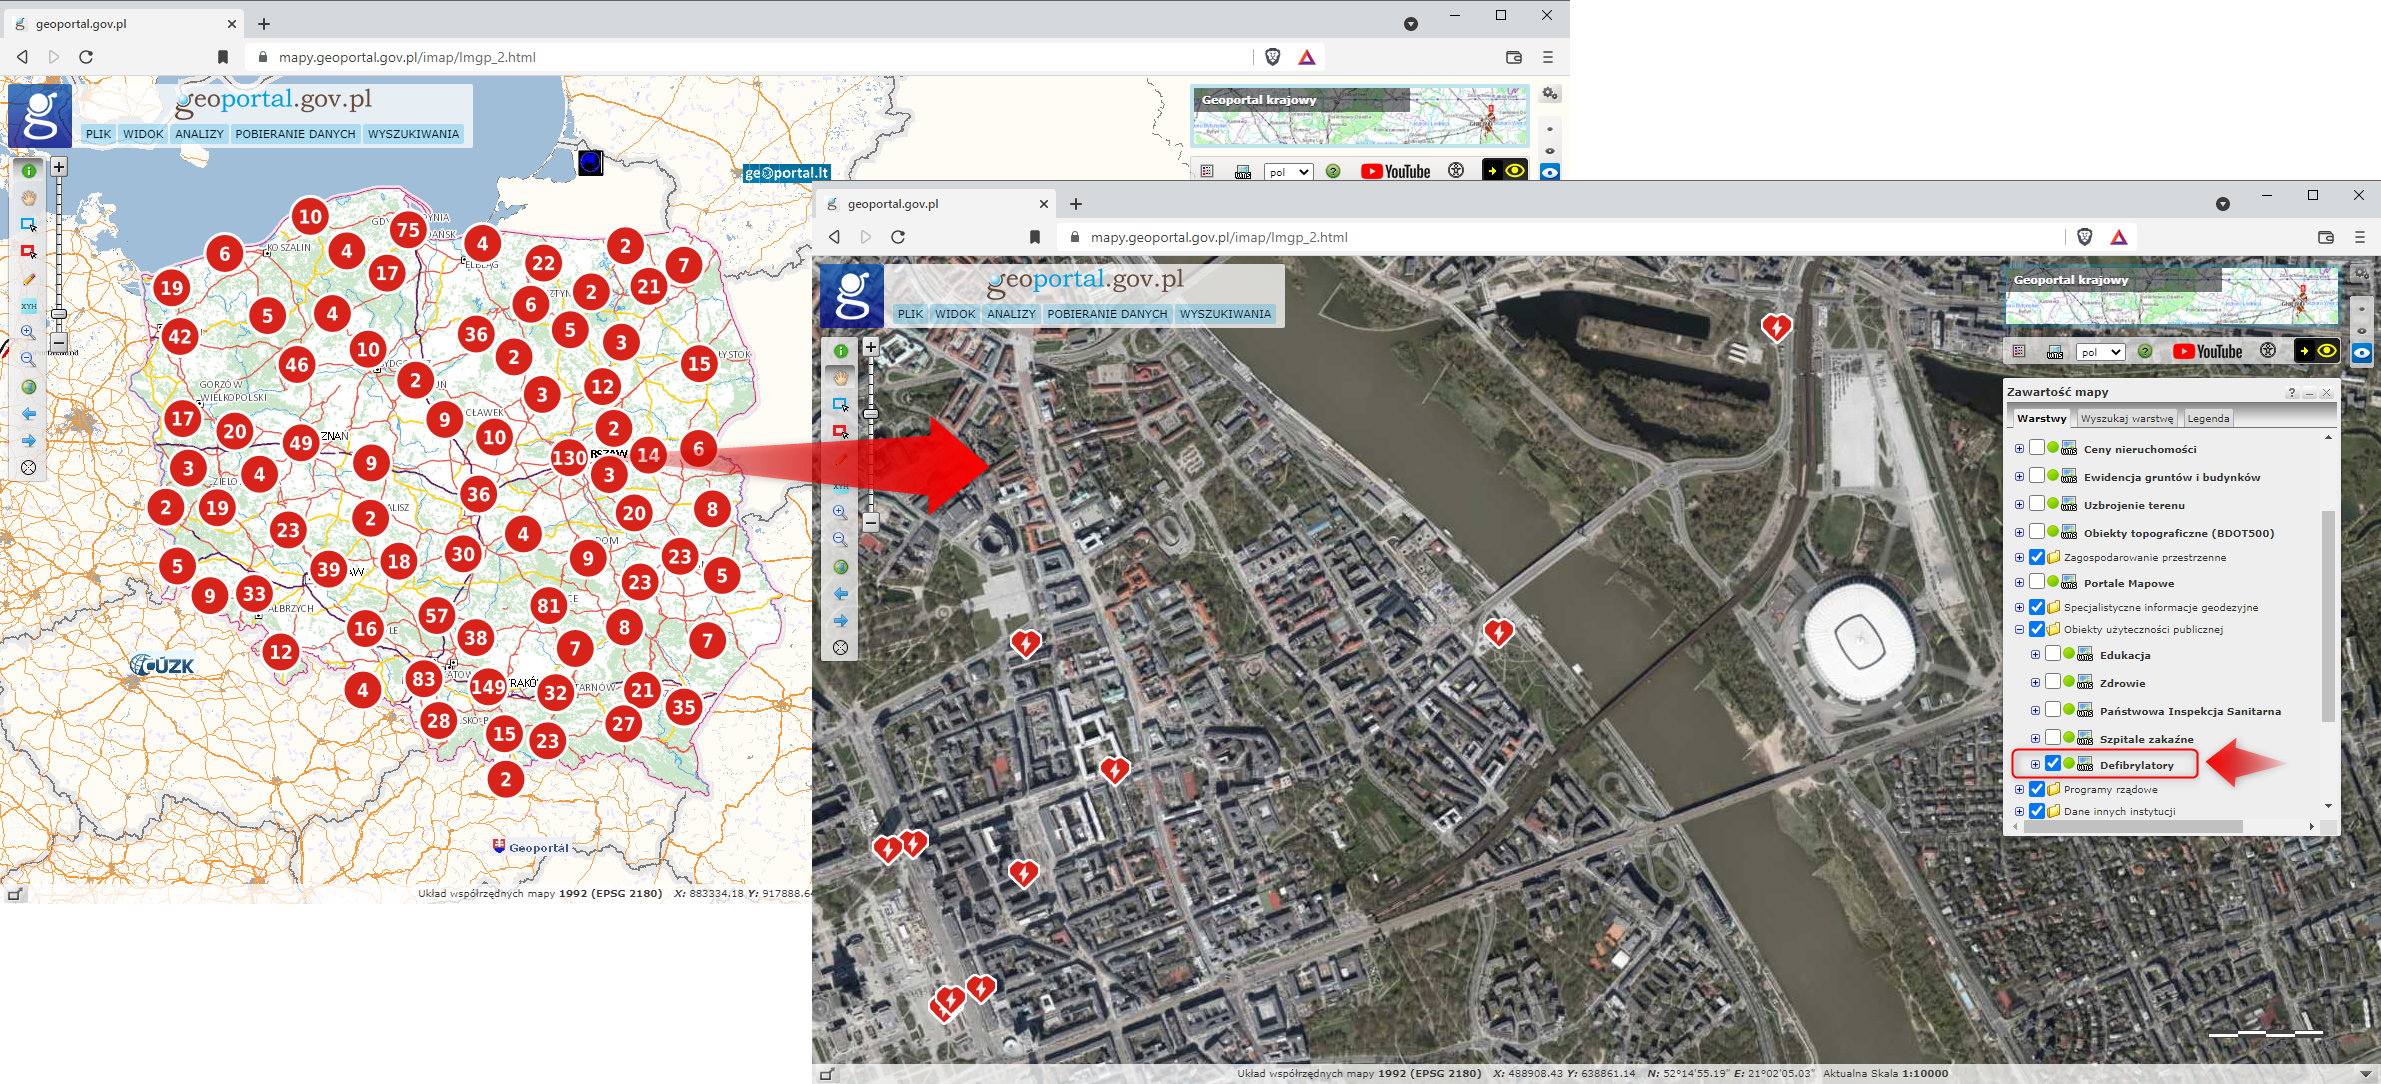 Ilustracja przestawia serwis mapowy www.geoportal.gov.pl wraz z widokiem na warstwę o nazwie "Defibrylatory" opracowaną na podstawie danych źródłowych przekazanych przez OpenStreetMap. Warstwa została podpięta w drzewku warstw w sekcji Obiekty użyteczności publicznej.